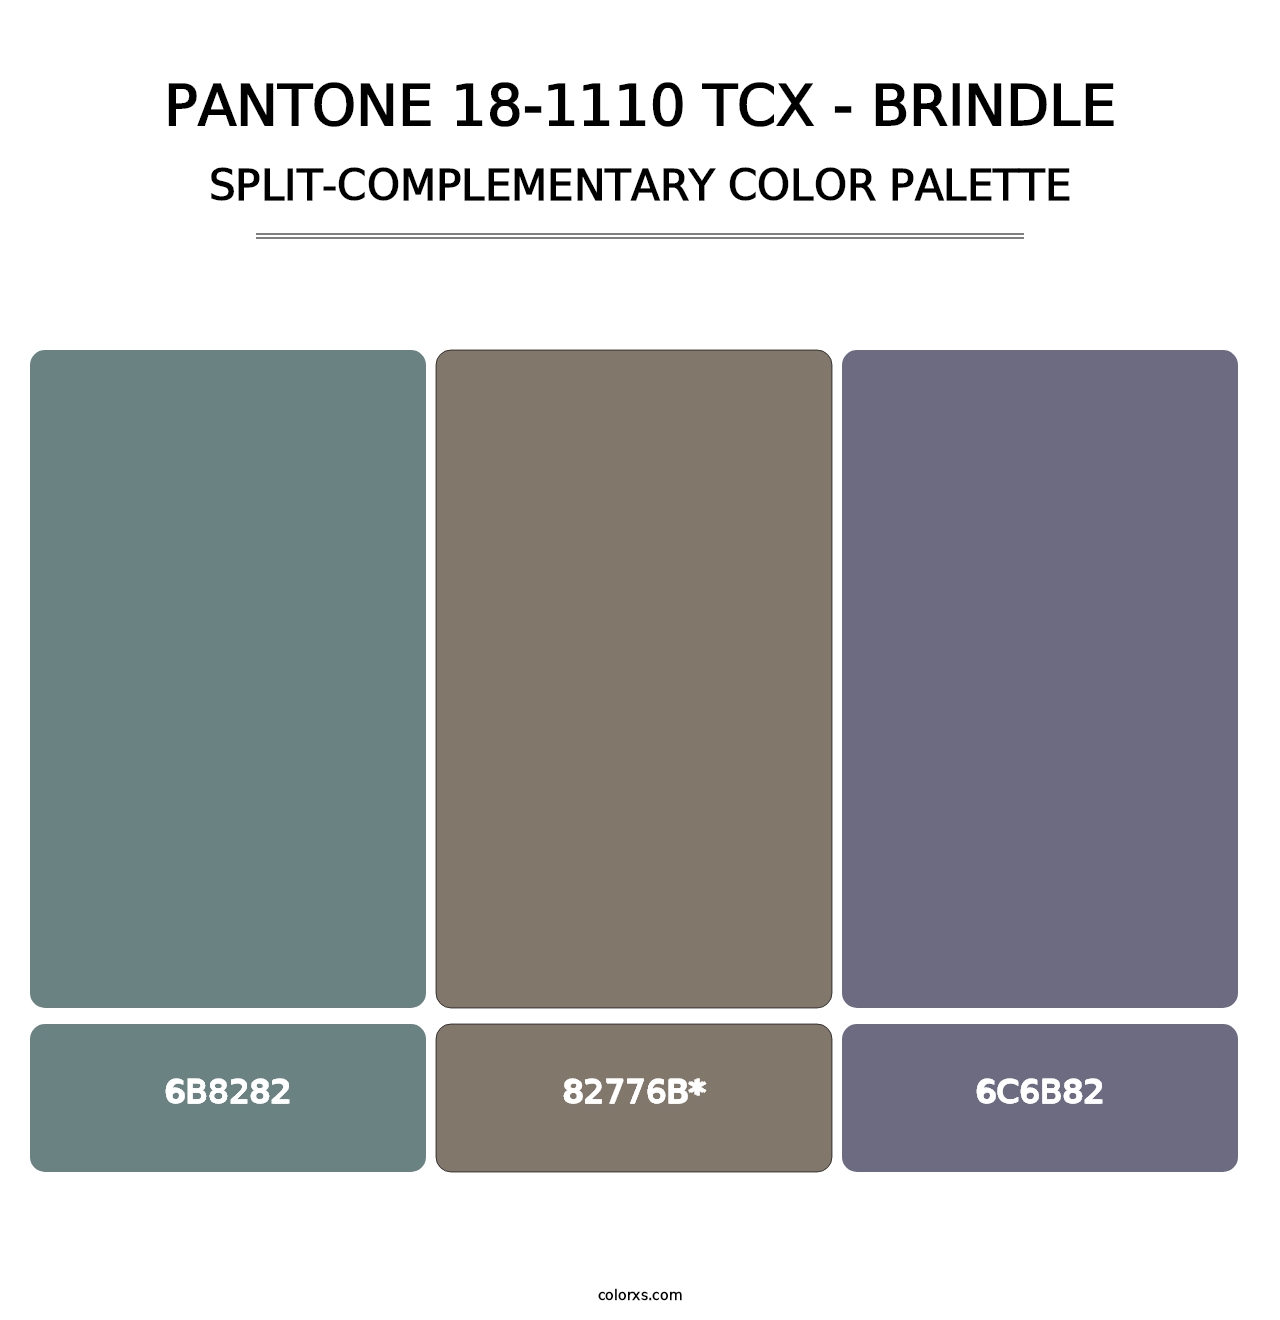 PANTONE 18-1110 TCX - Brindle - Split-Complementary Color Palette